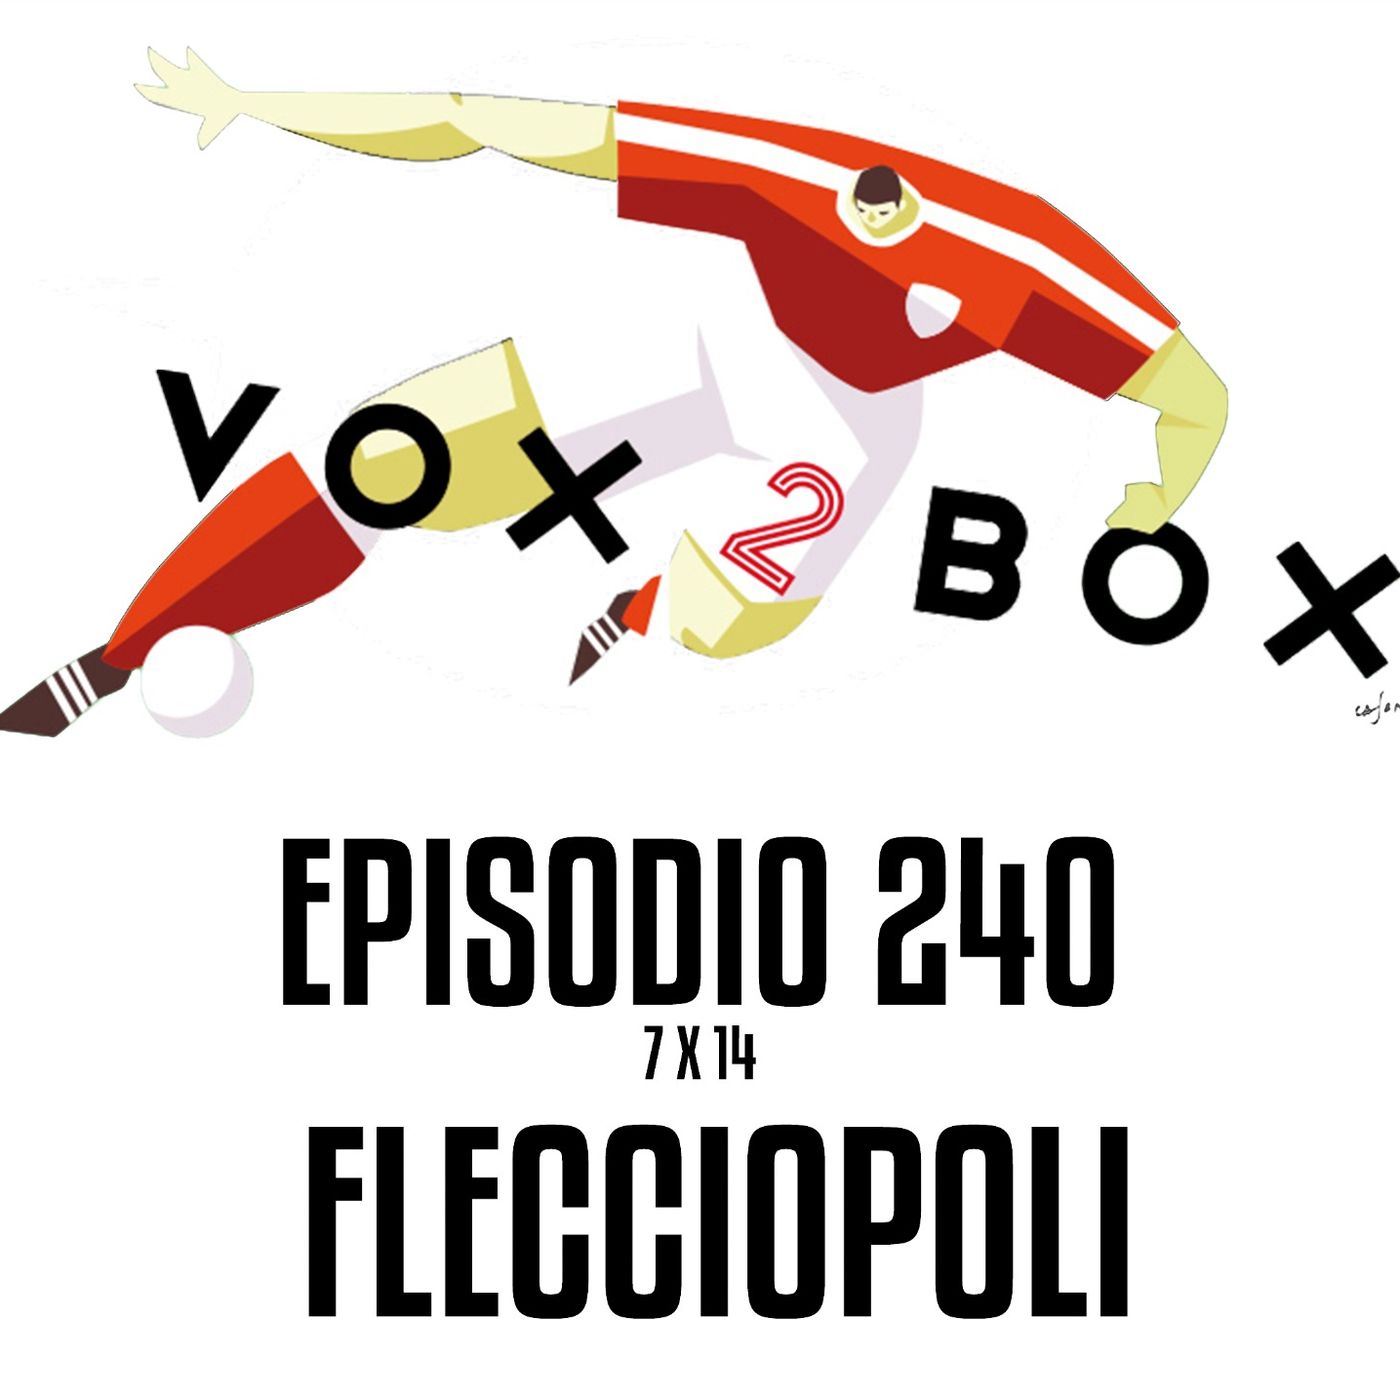 Episodio 240 (7x14) - Flecciopoli